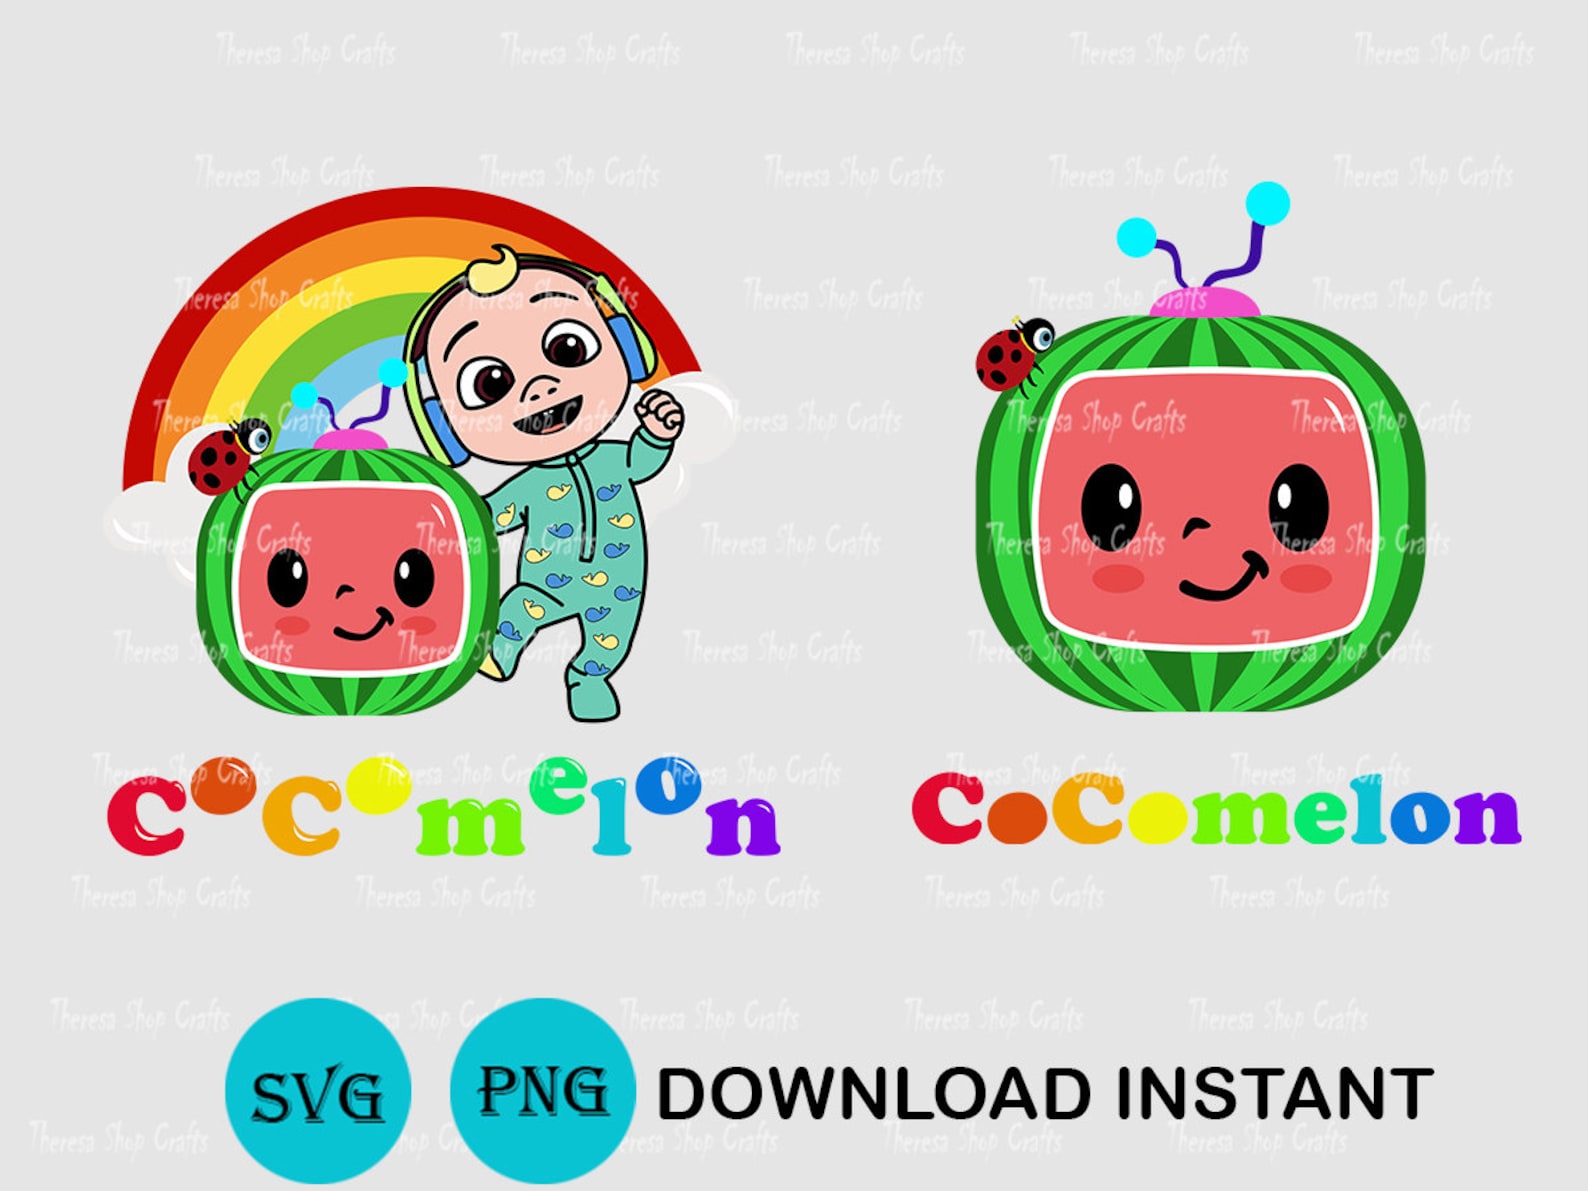 Coco Melon SVG Images